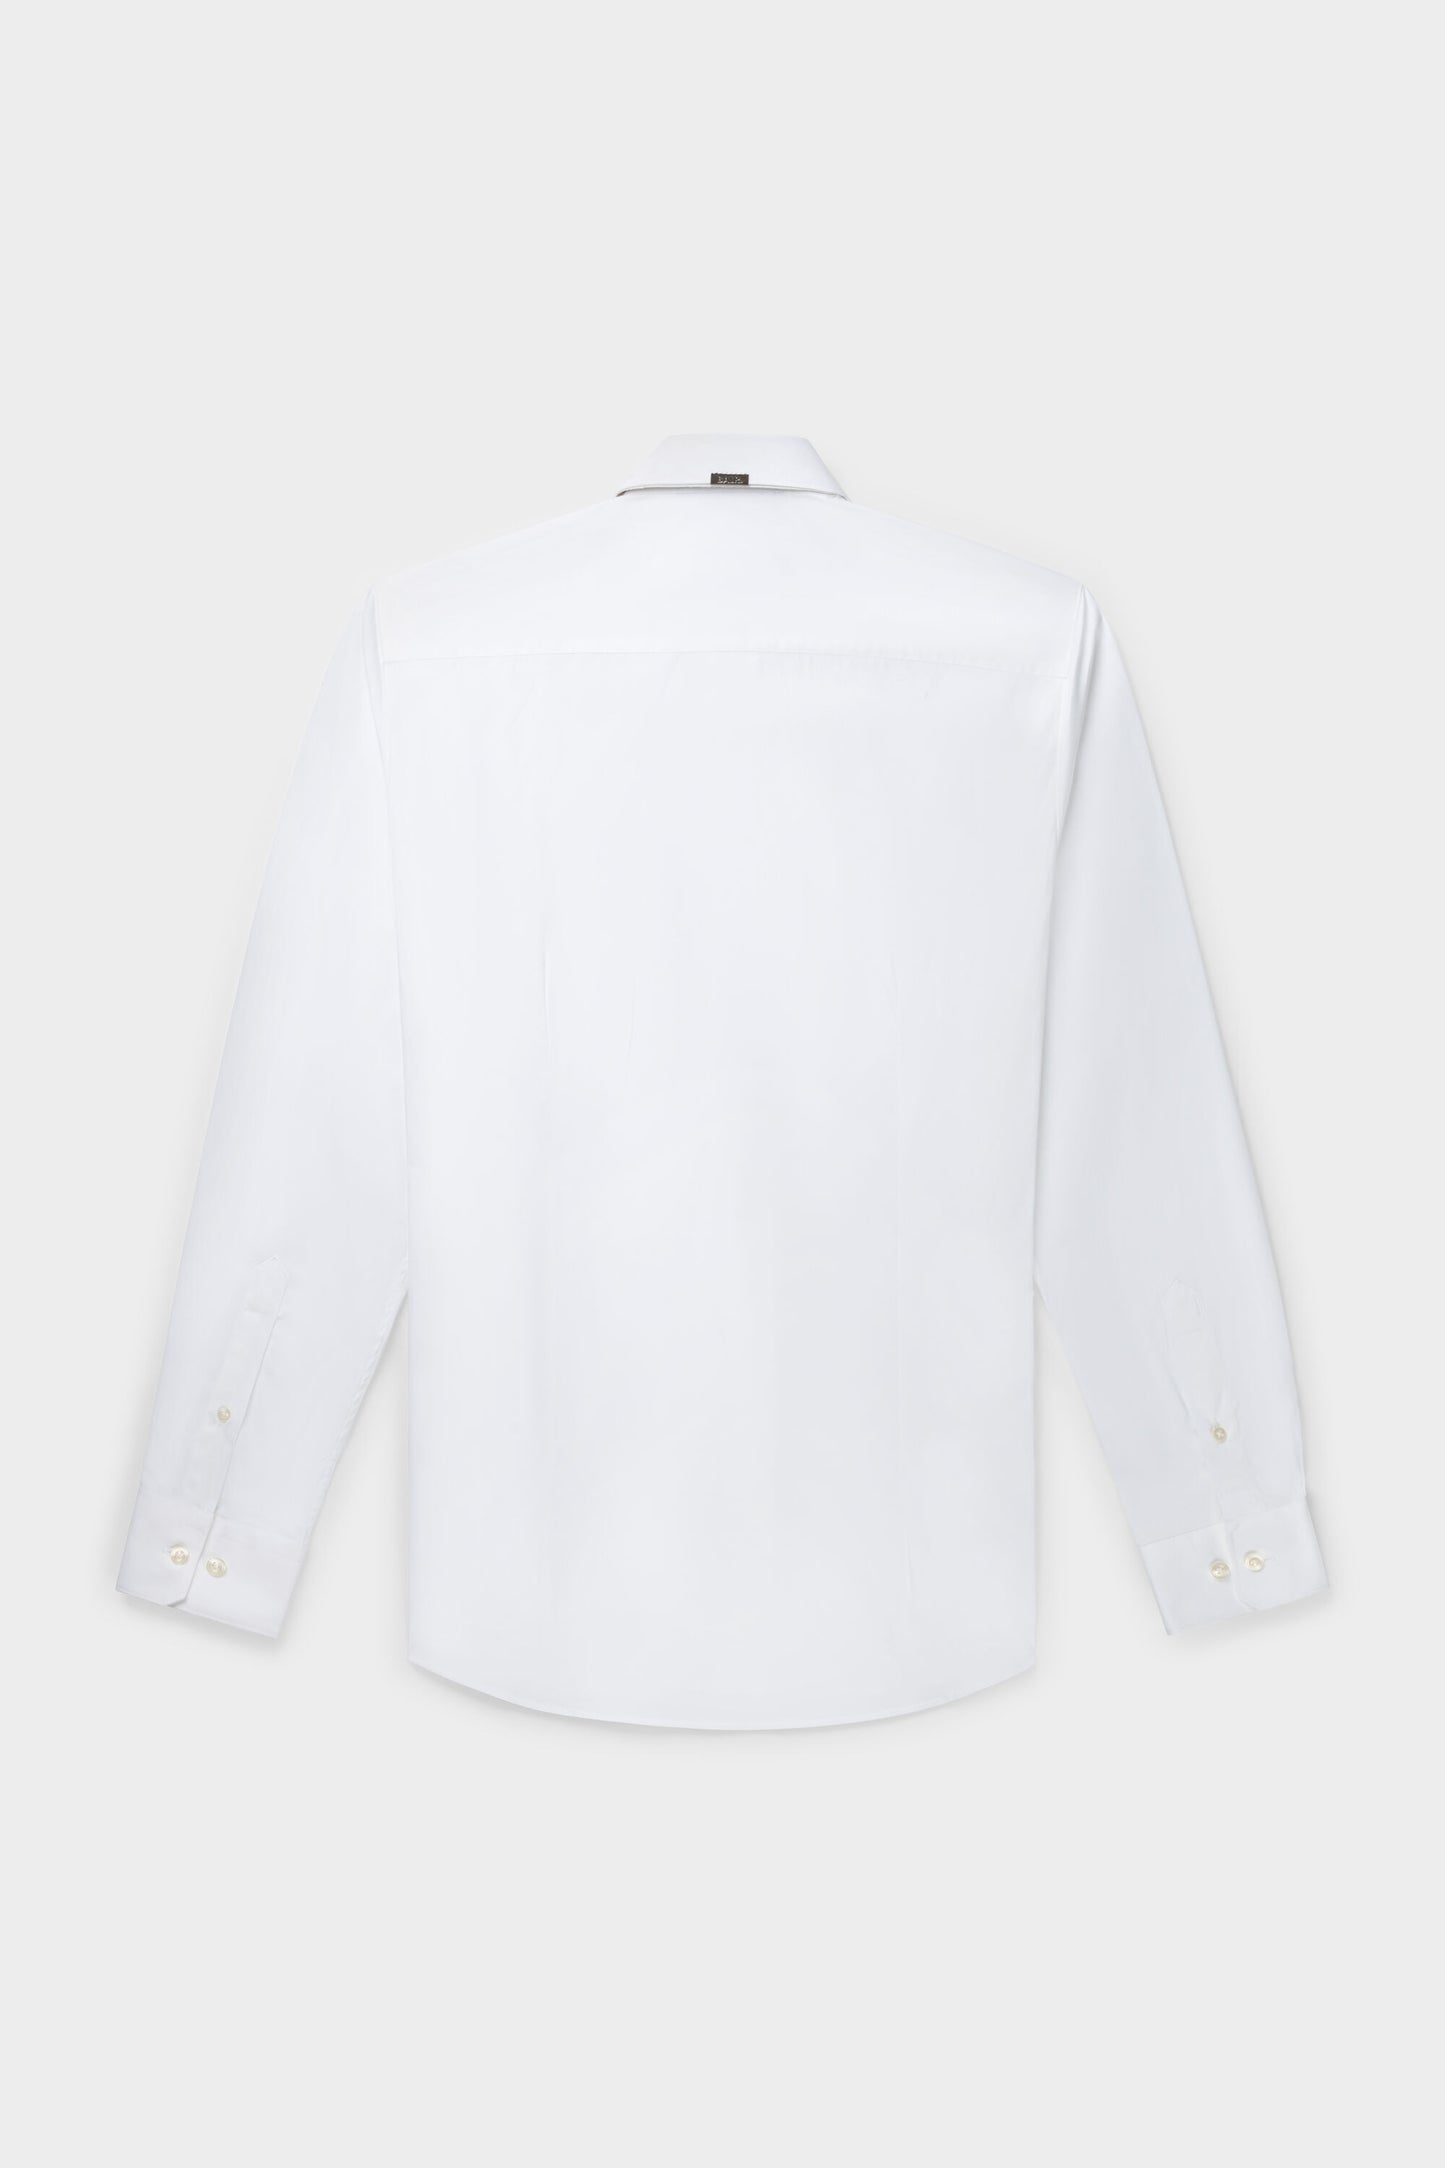 Philippe Slim Banks 2 Shirt Bright White